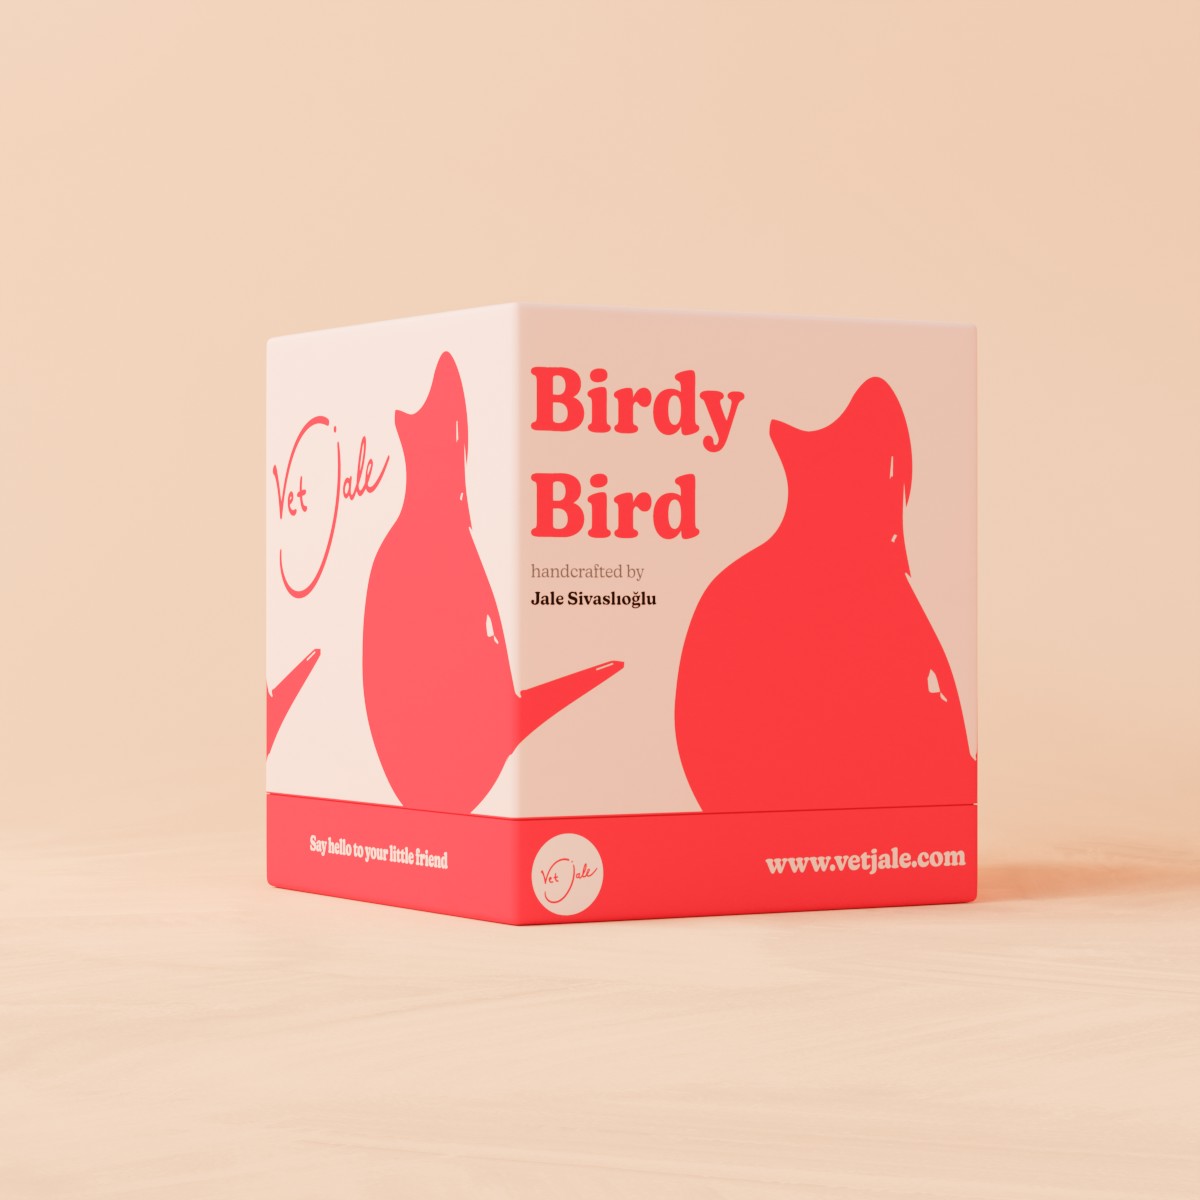 Birdy Bird packaging